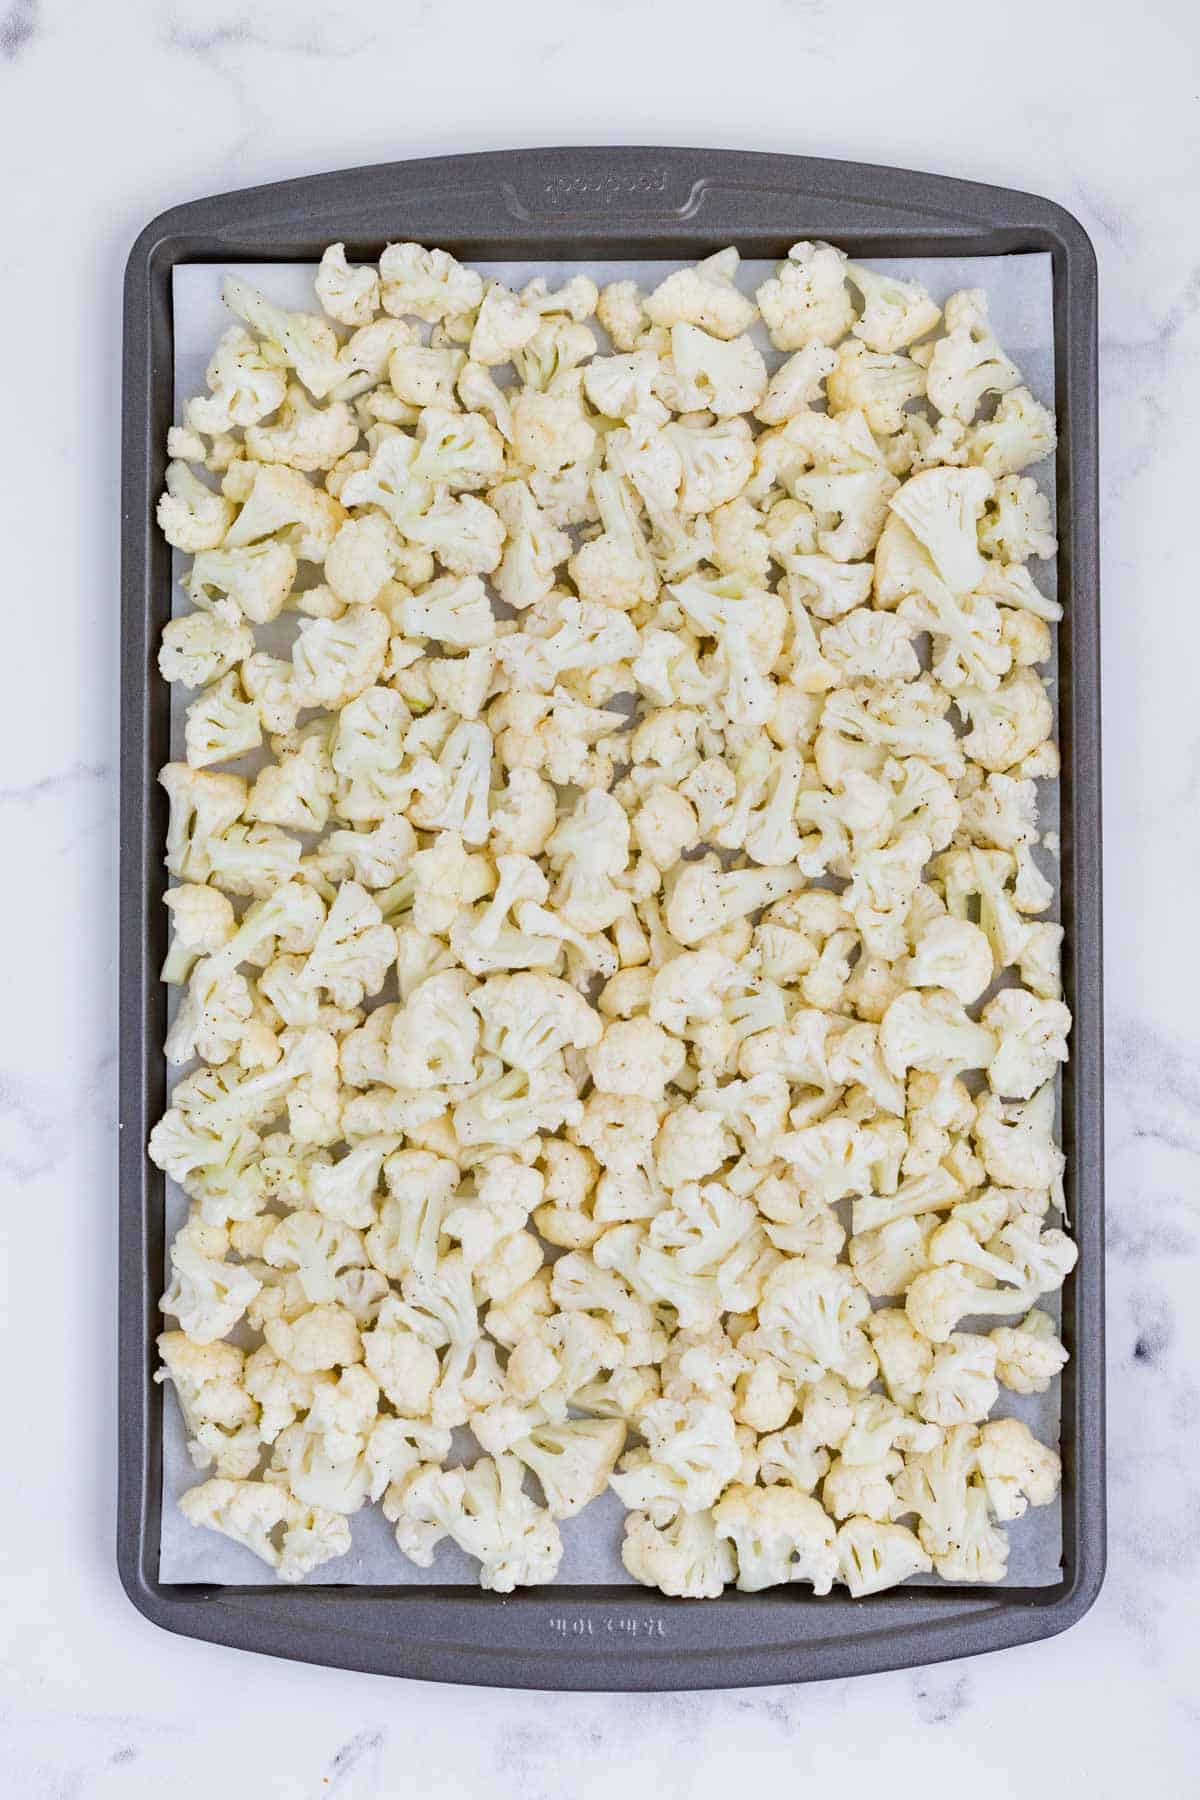 Seasoned cauliflower is roasted on a baking sheet.